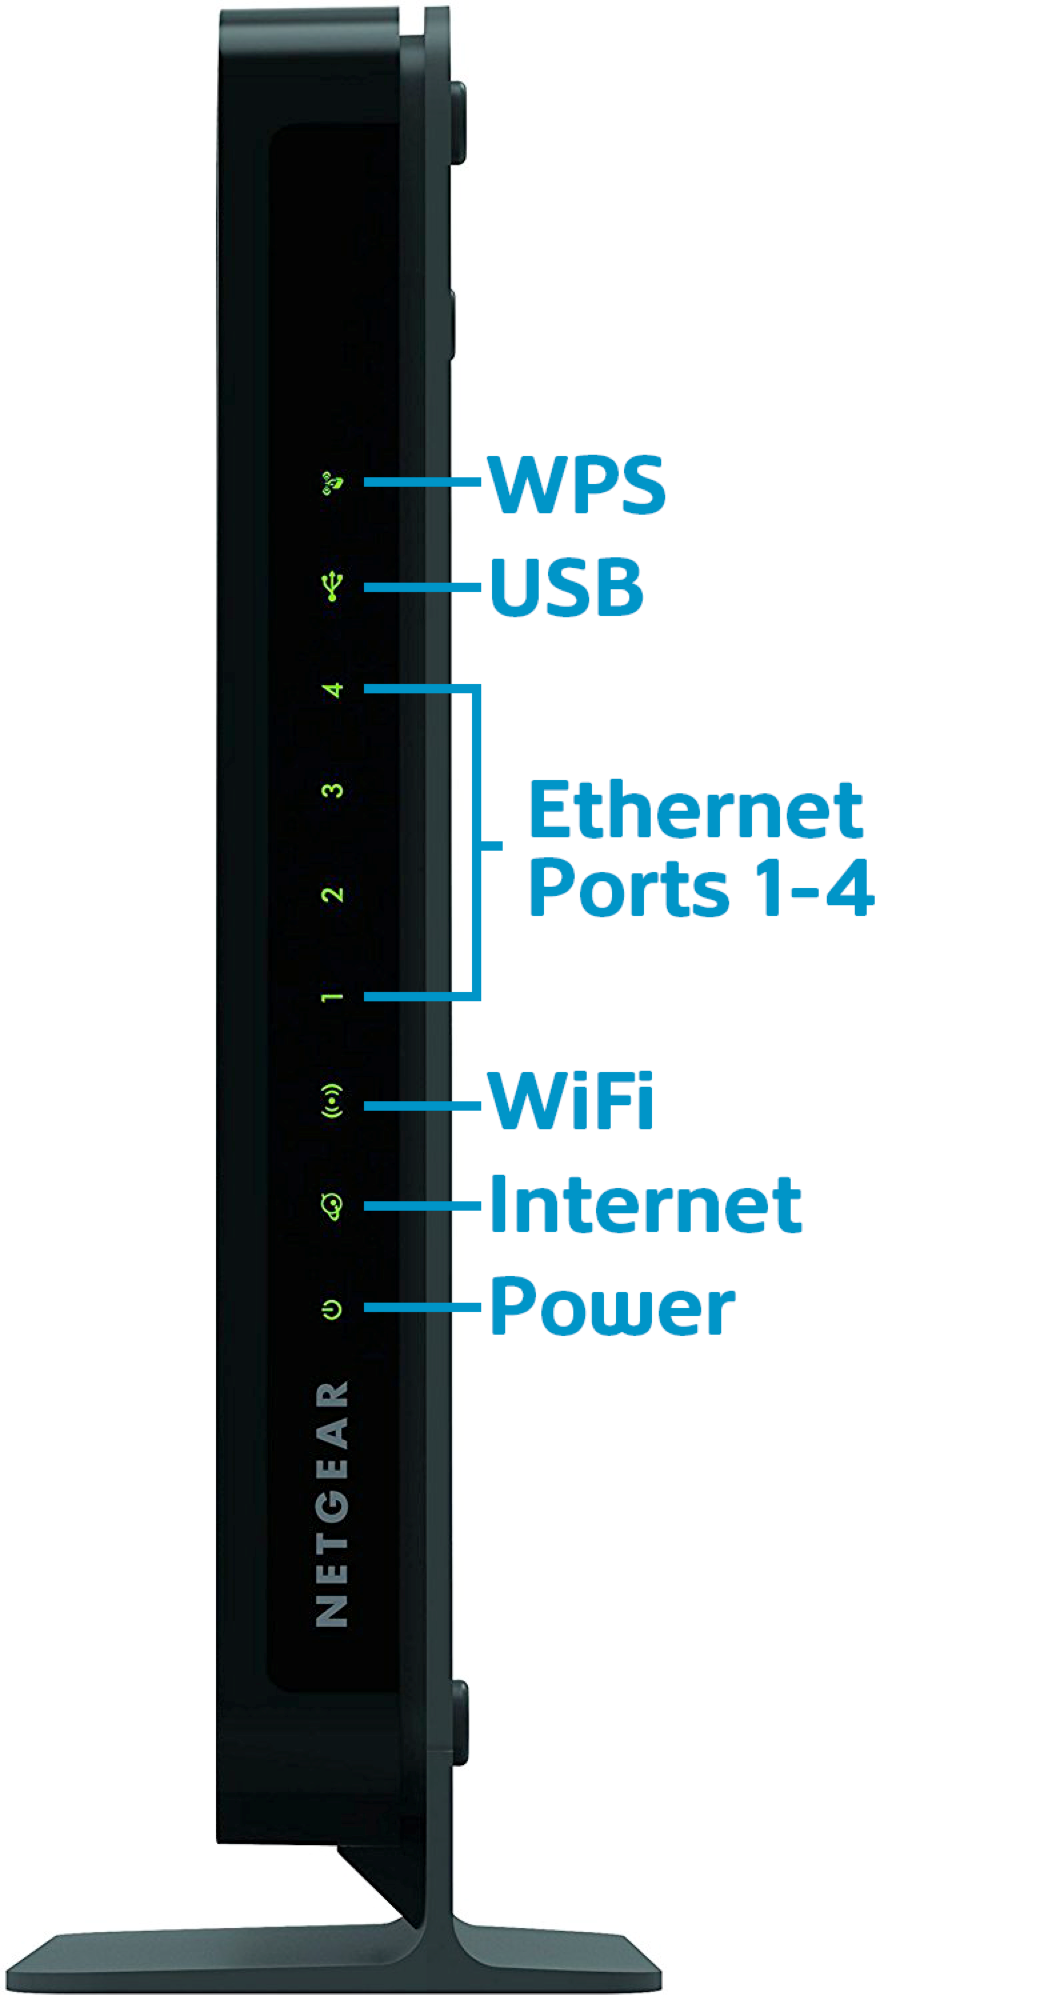 Netgear Router Blinking Wifi Light - Re Model R6900p Orange Light Stays On ...